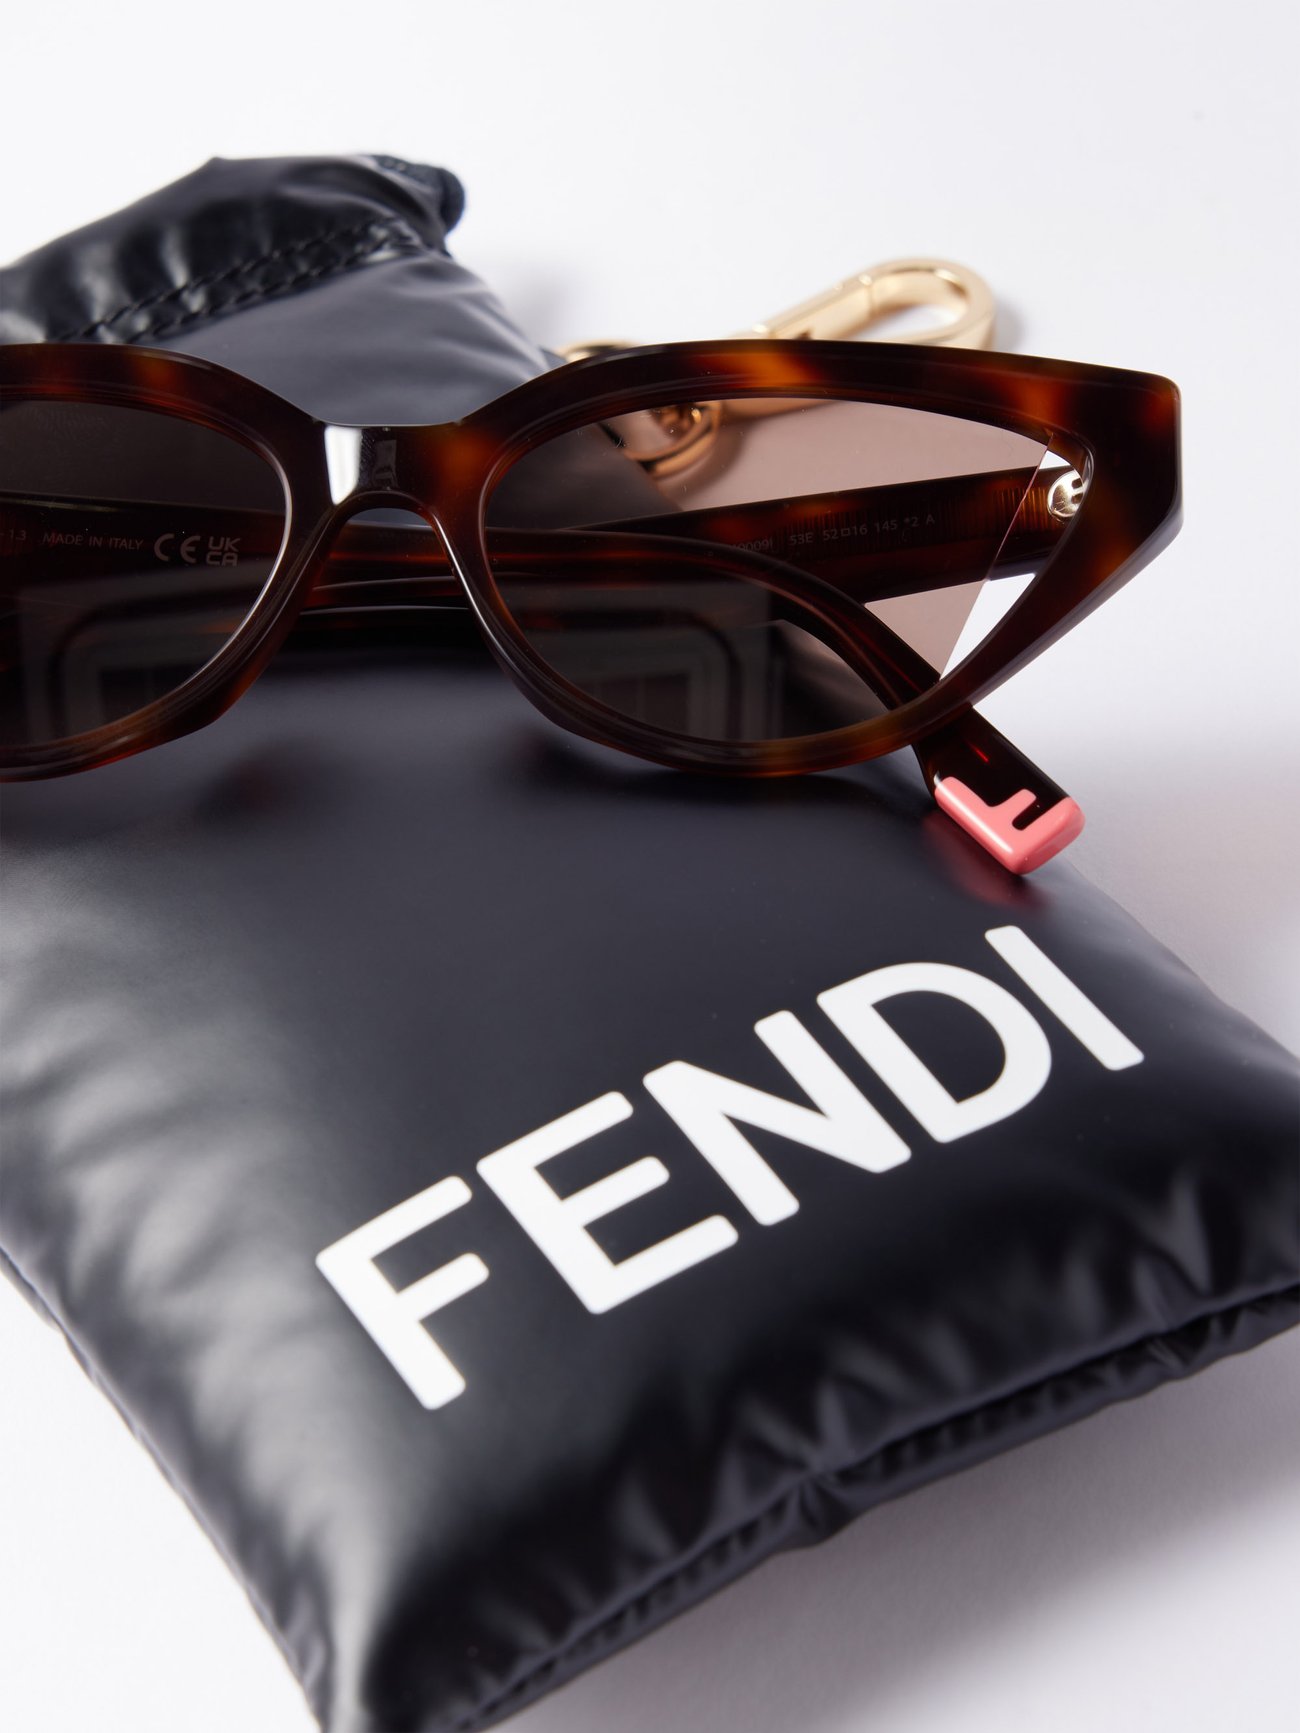 Fendi Women's Lettering Cat Eye Sunglasses